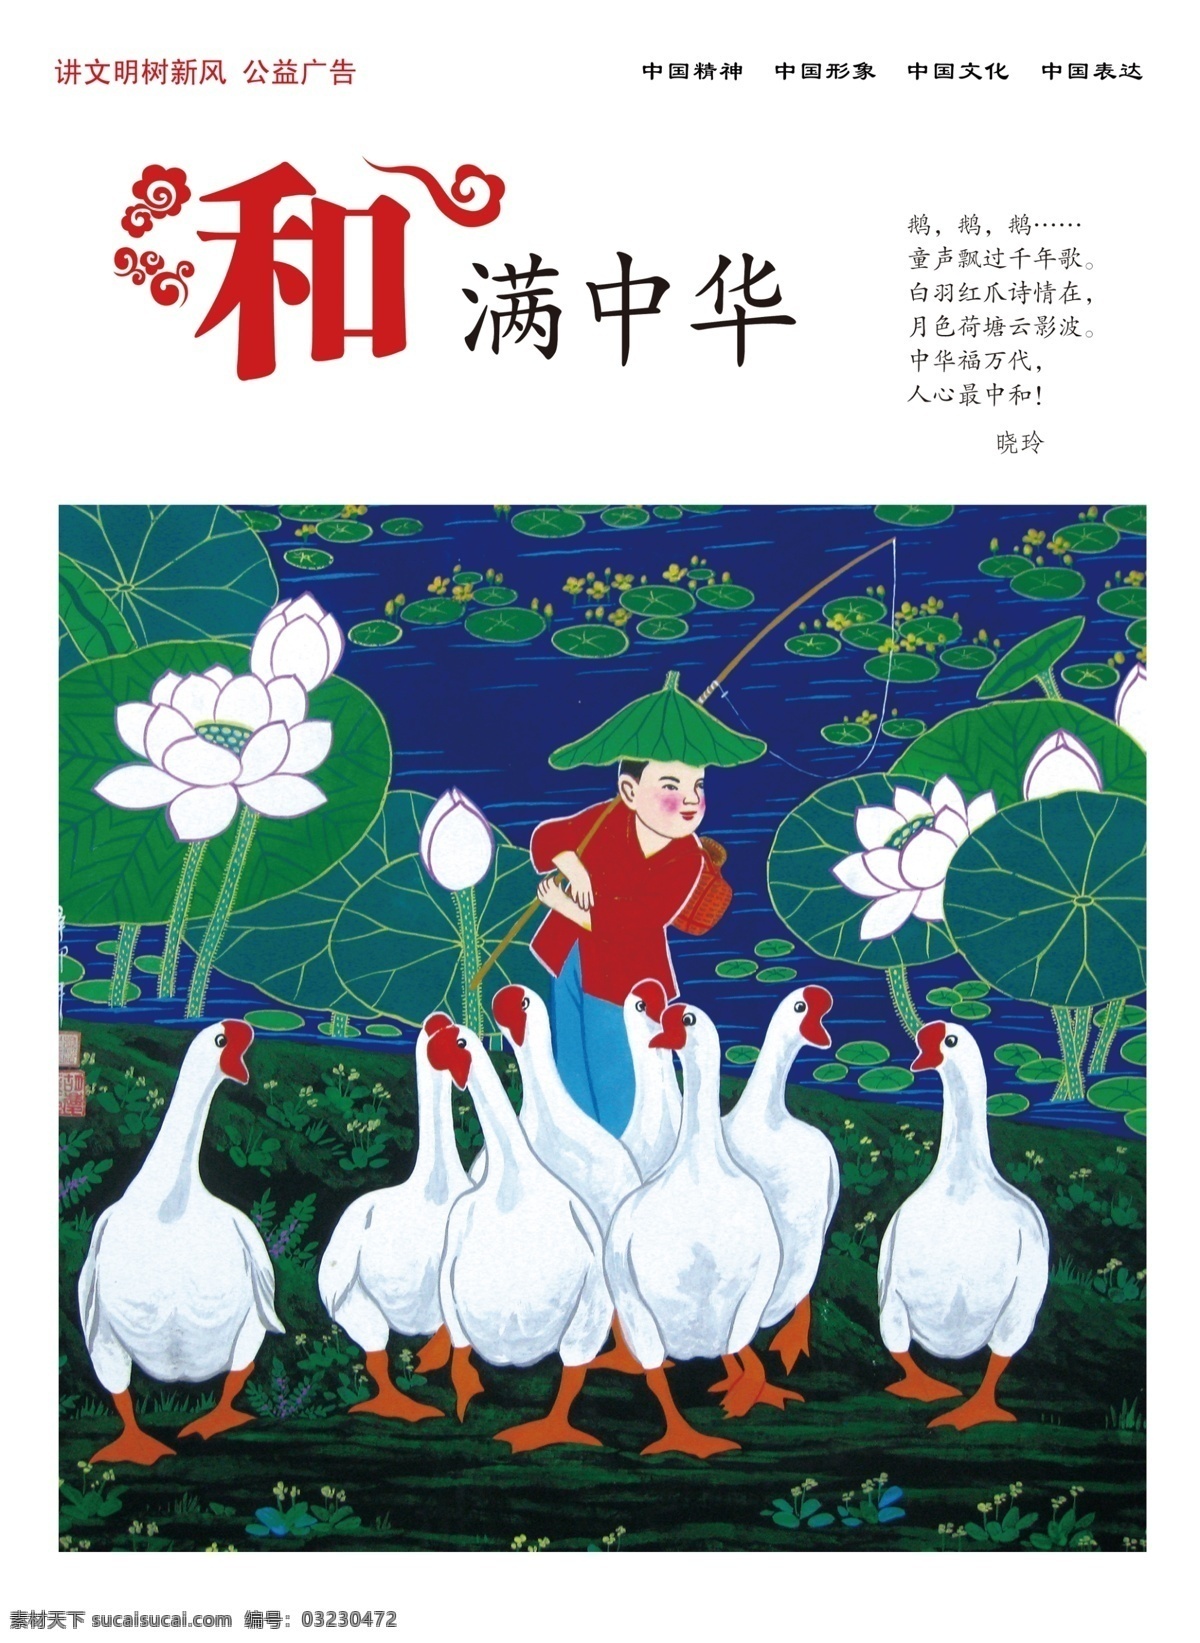 公益海报 和满中华 中国梦 讲文明 树新风 中国文化 中国表达 中国精神 中国形象